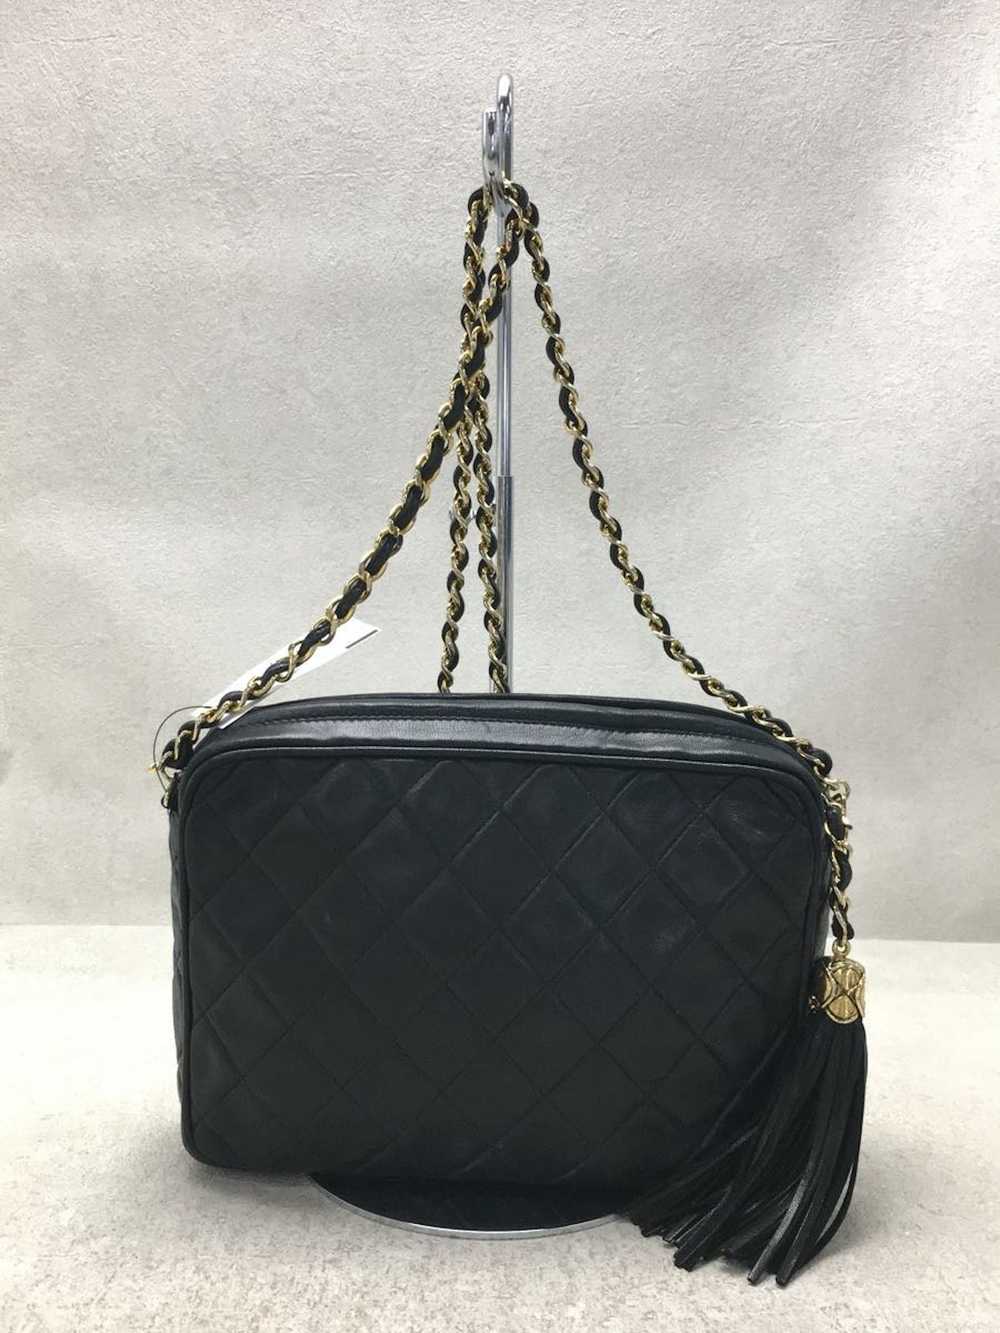 Chanel Chanel Leather Shoulder Bag - image 4